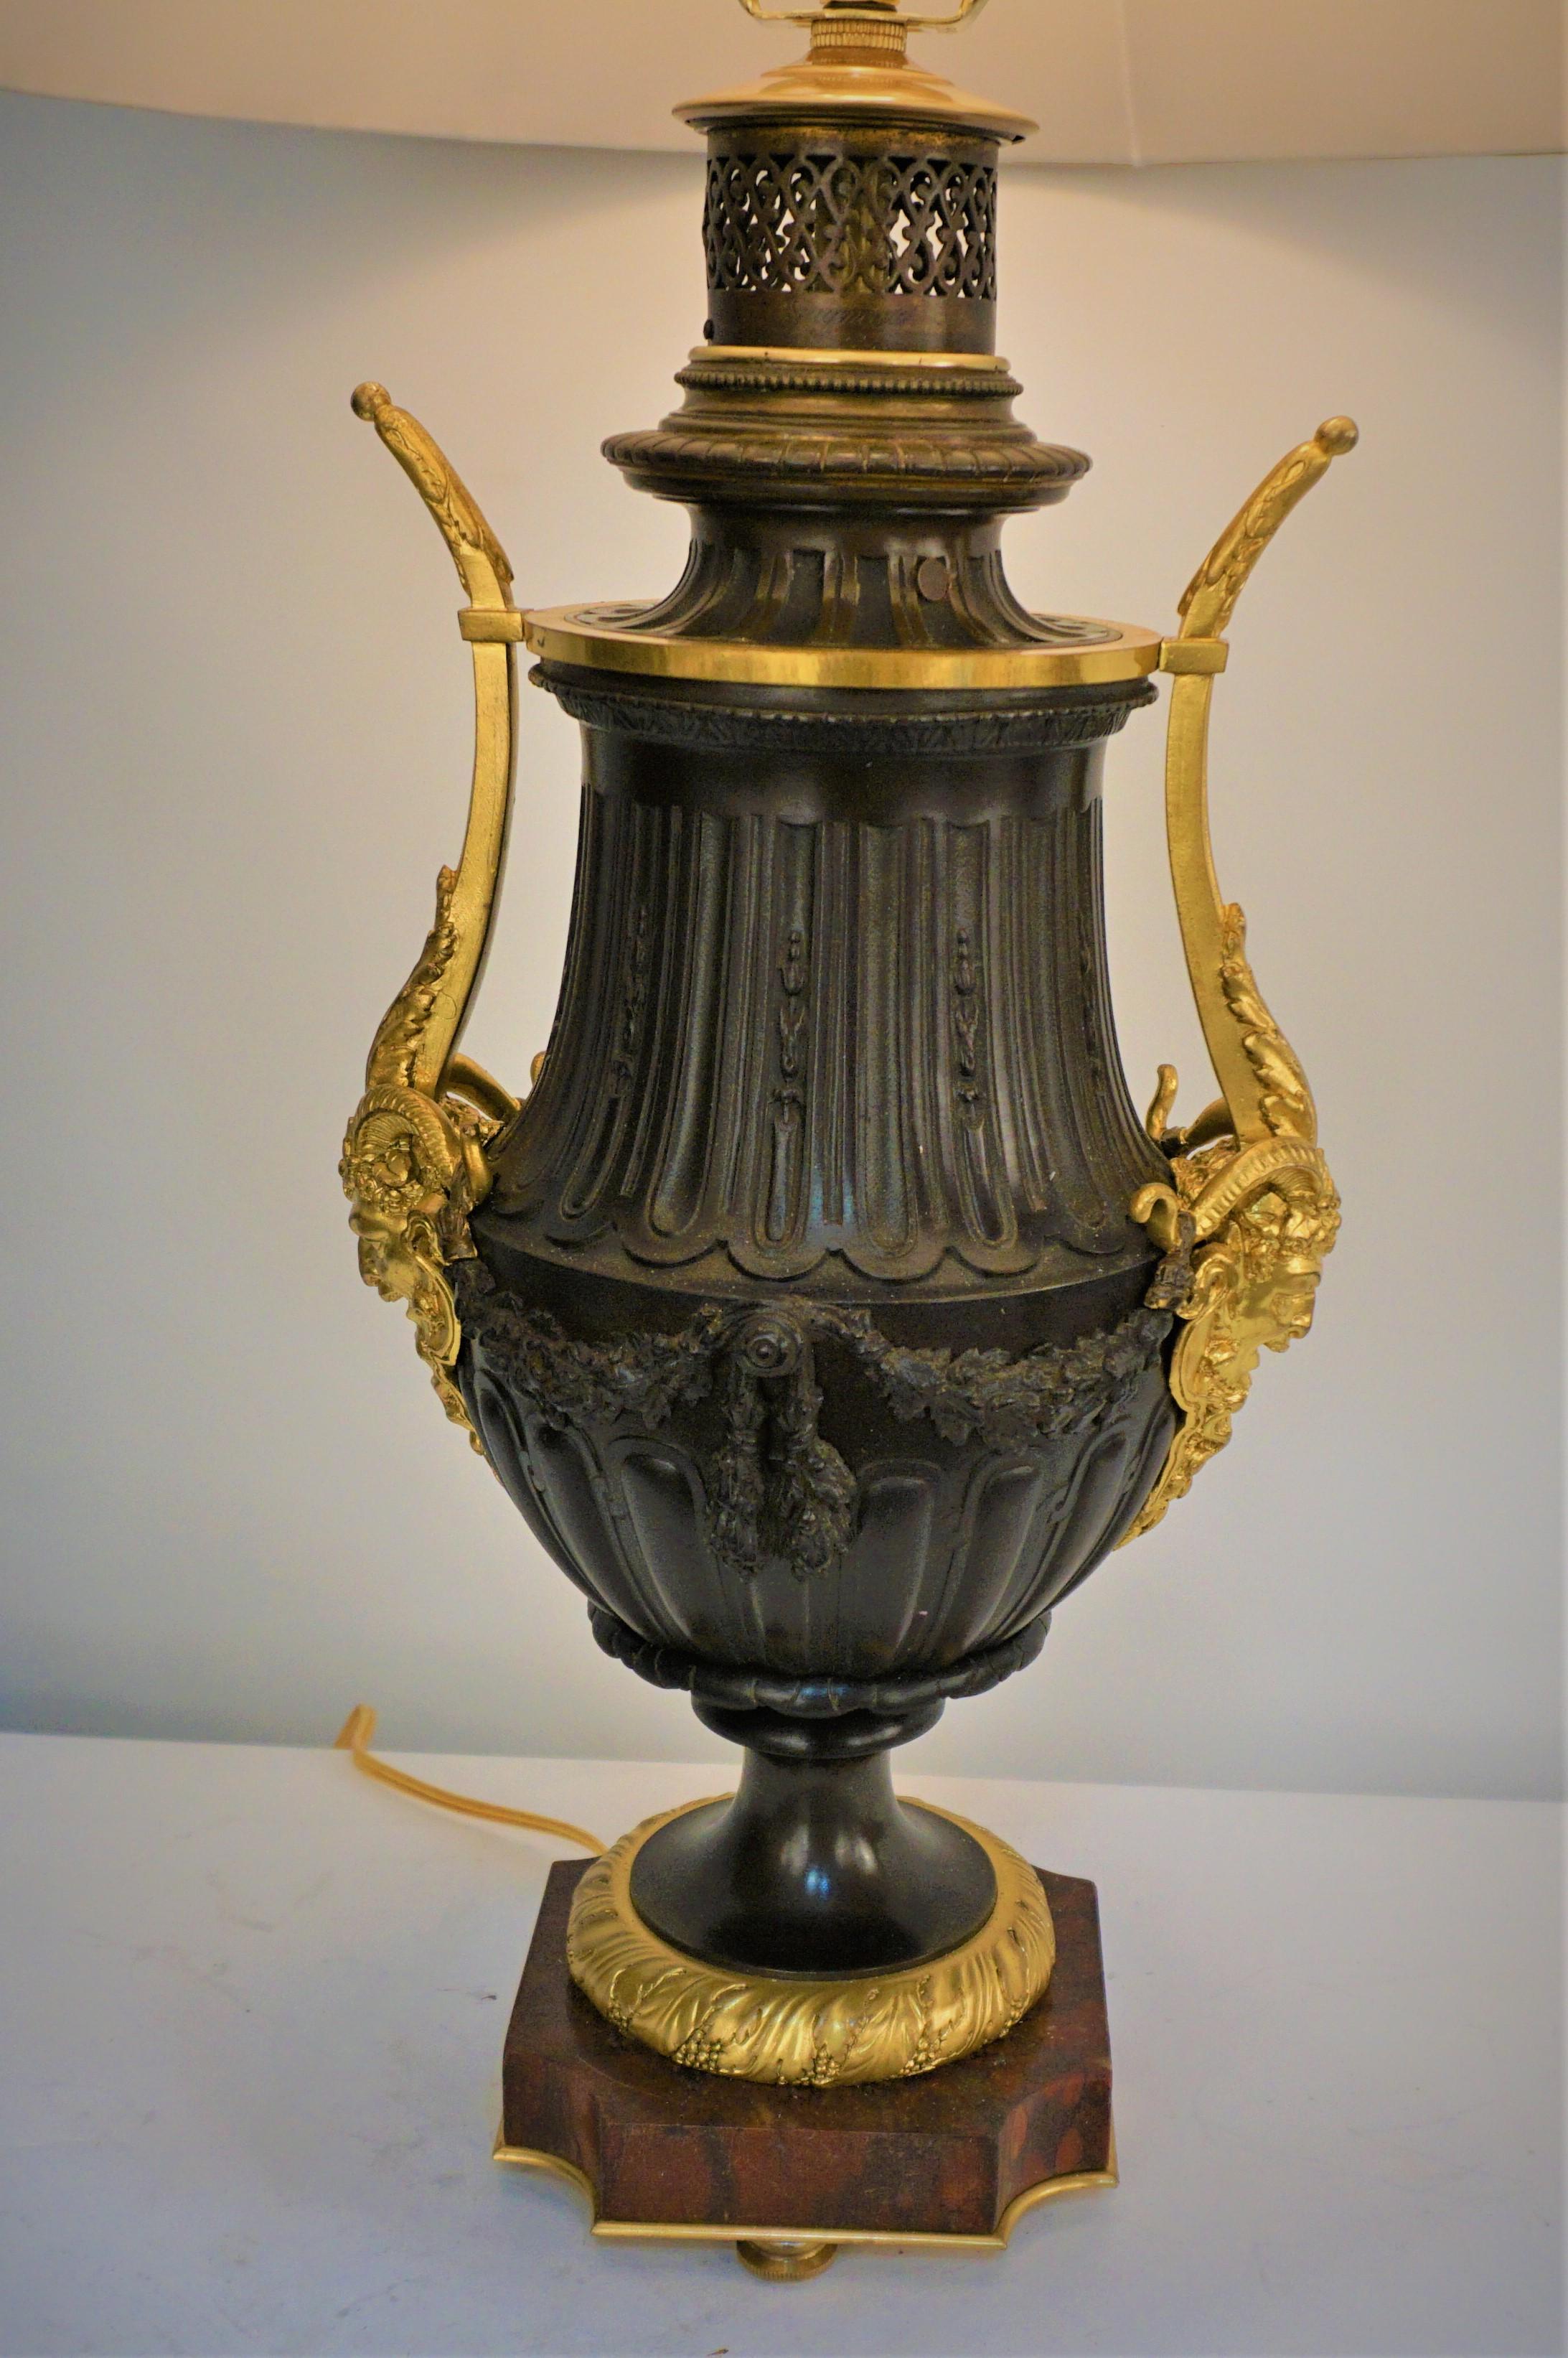 Lampe à huile du 19ème siècle, de couleur brun foncé, en bronze glit, électrifiée par un professionnel et équipée d'un abat-jour en soie plissé.
Prise 3 voies, jusqu'à 250watts.